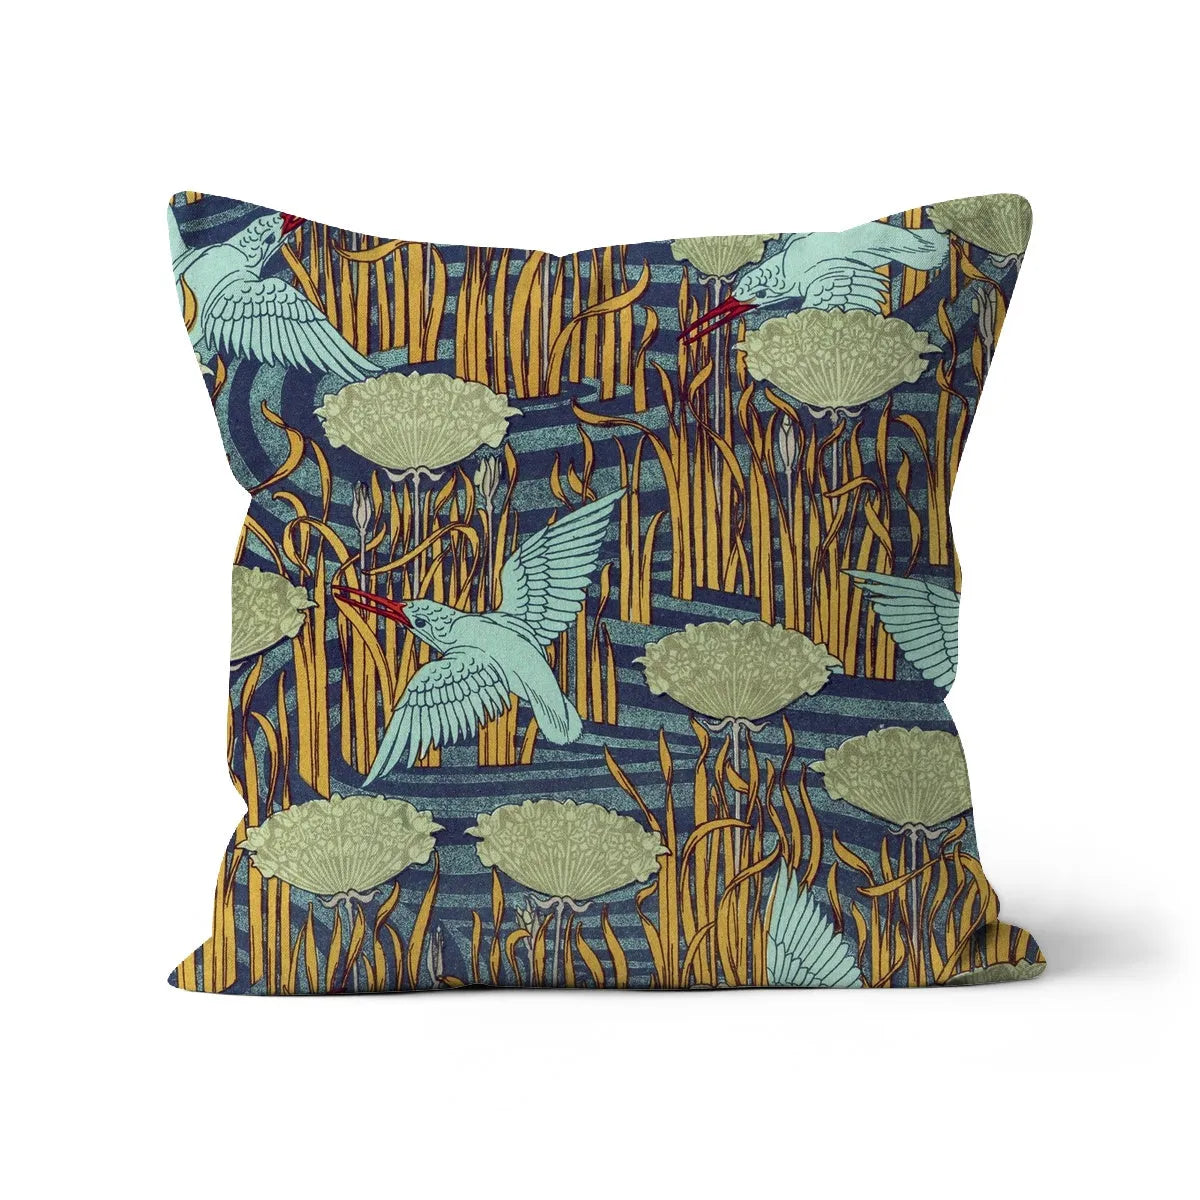 Martins-pêcheurs - Maurice Pillard Verneuil Cushion - Decorative Throw Pillow - Linen / 18’x18’ - Throw Pillows